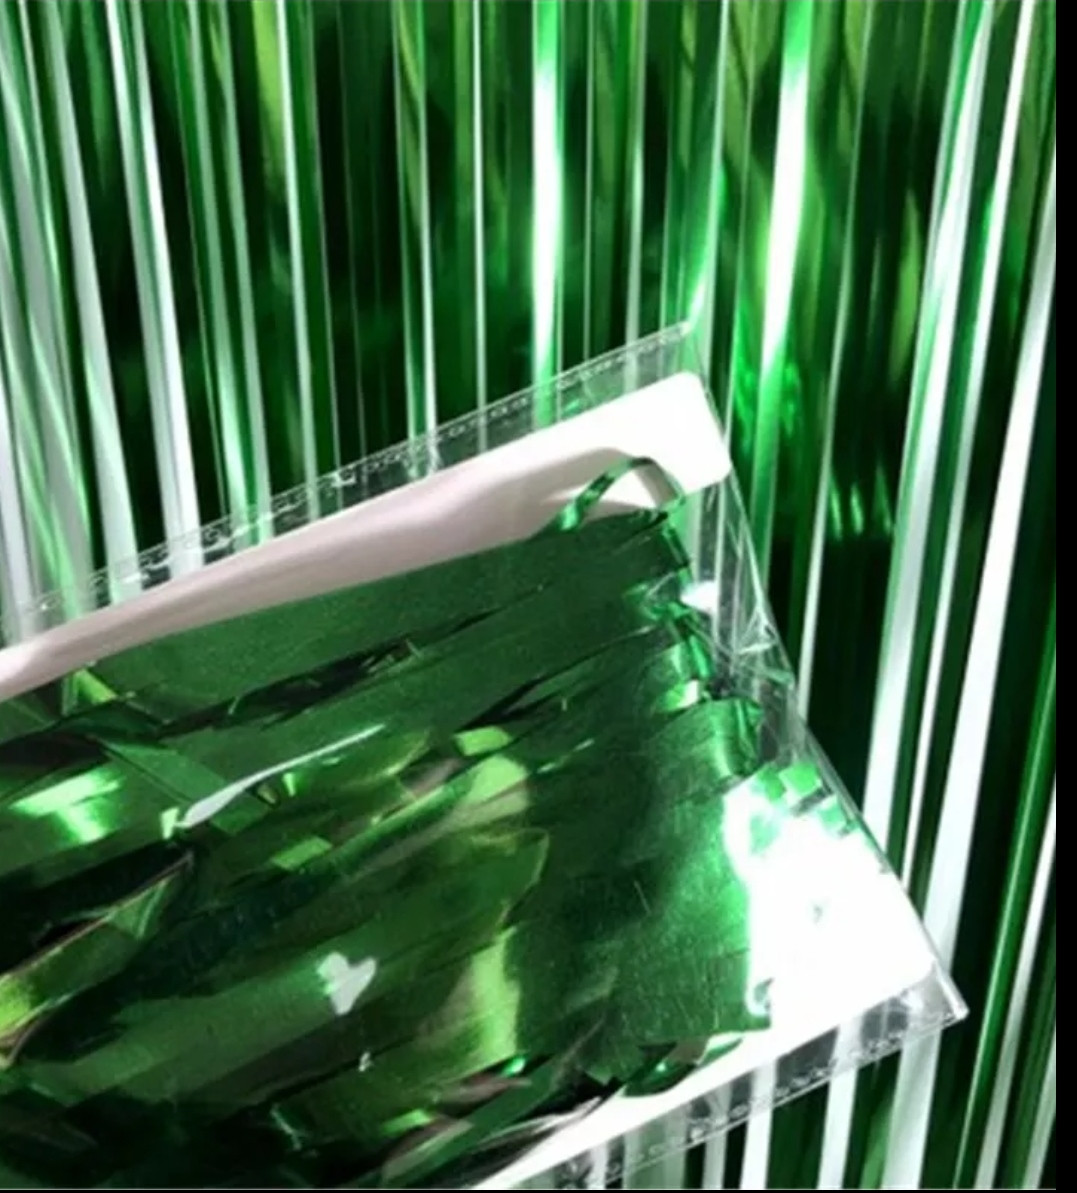 Дощик штора з фольги для фотозон зелена 1м х 2м